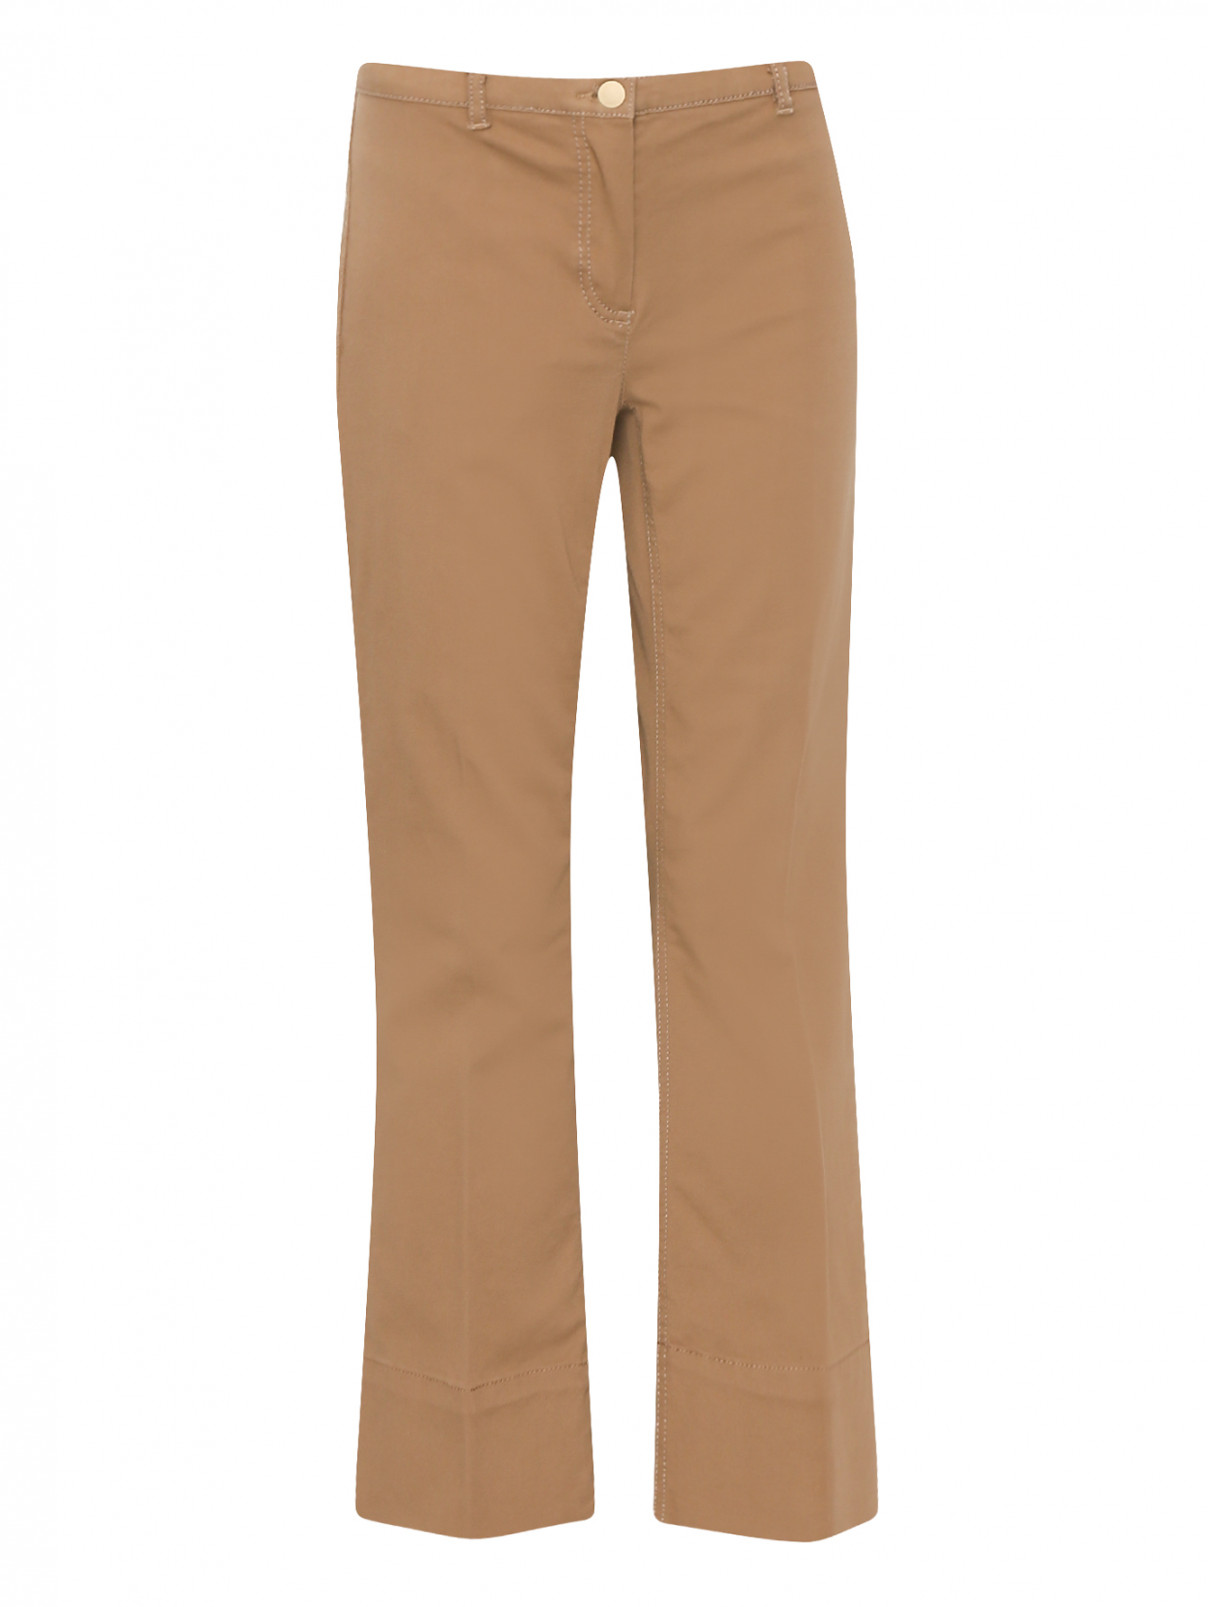 Укороченные брюки из хлопка Max Mara  –  Общий вид  – Цвет:  Коричневый